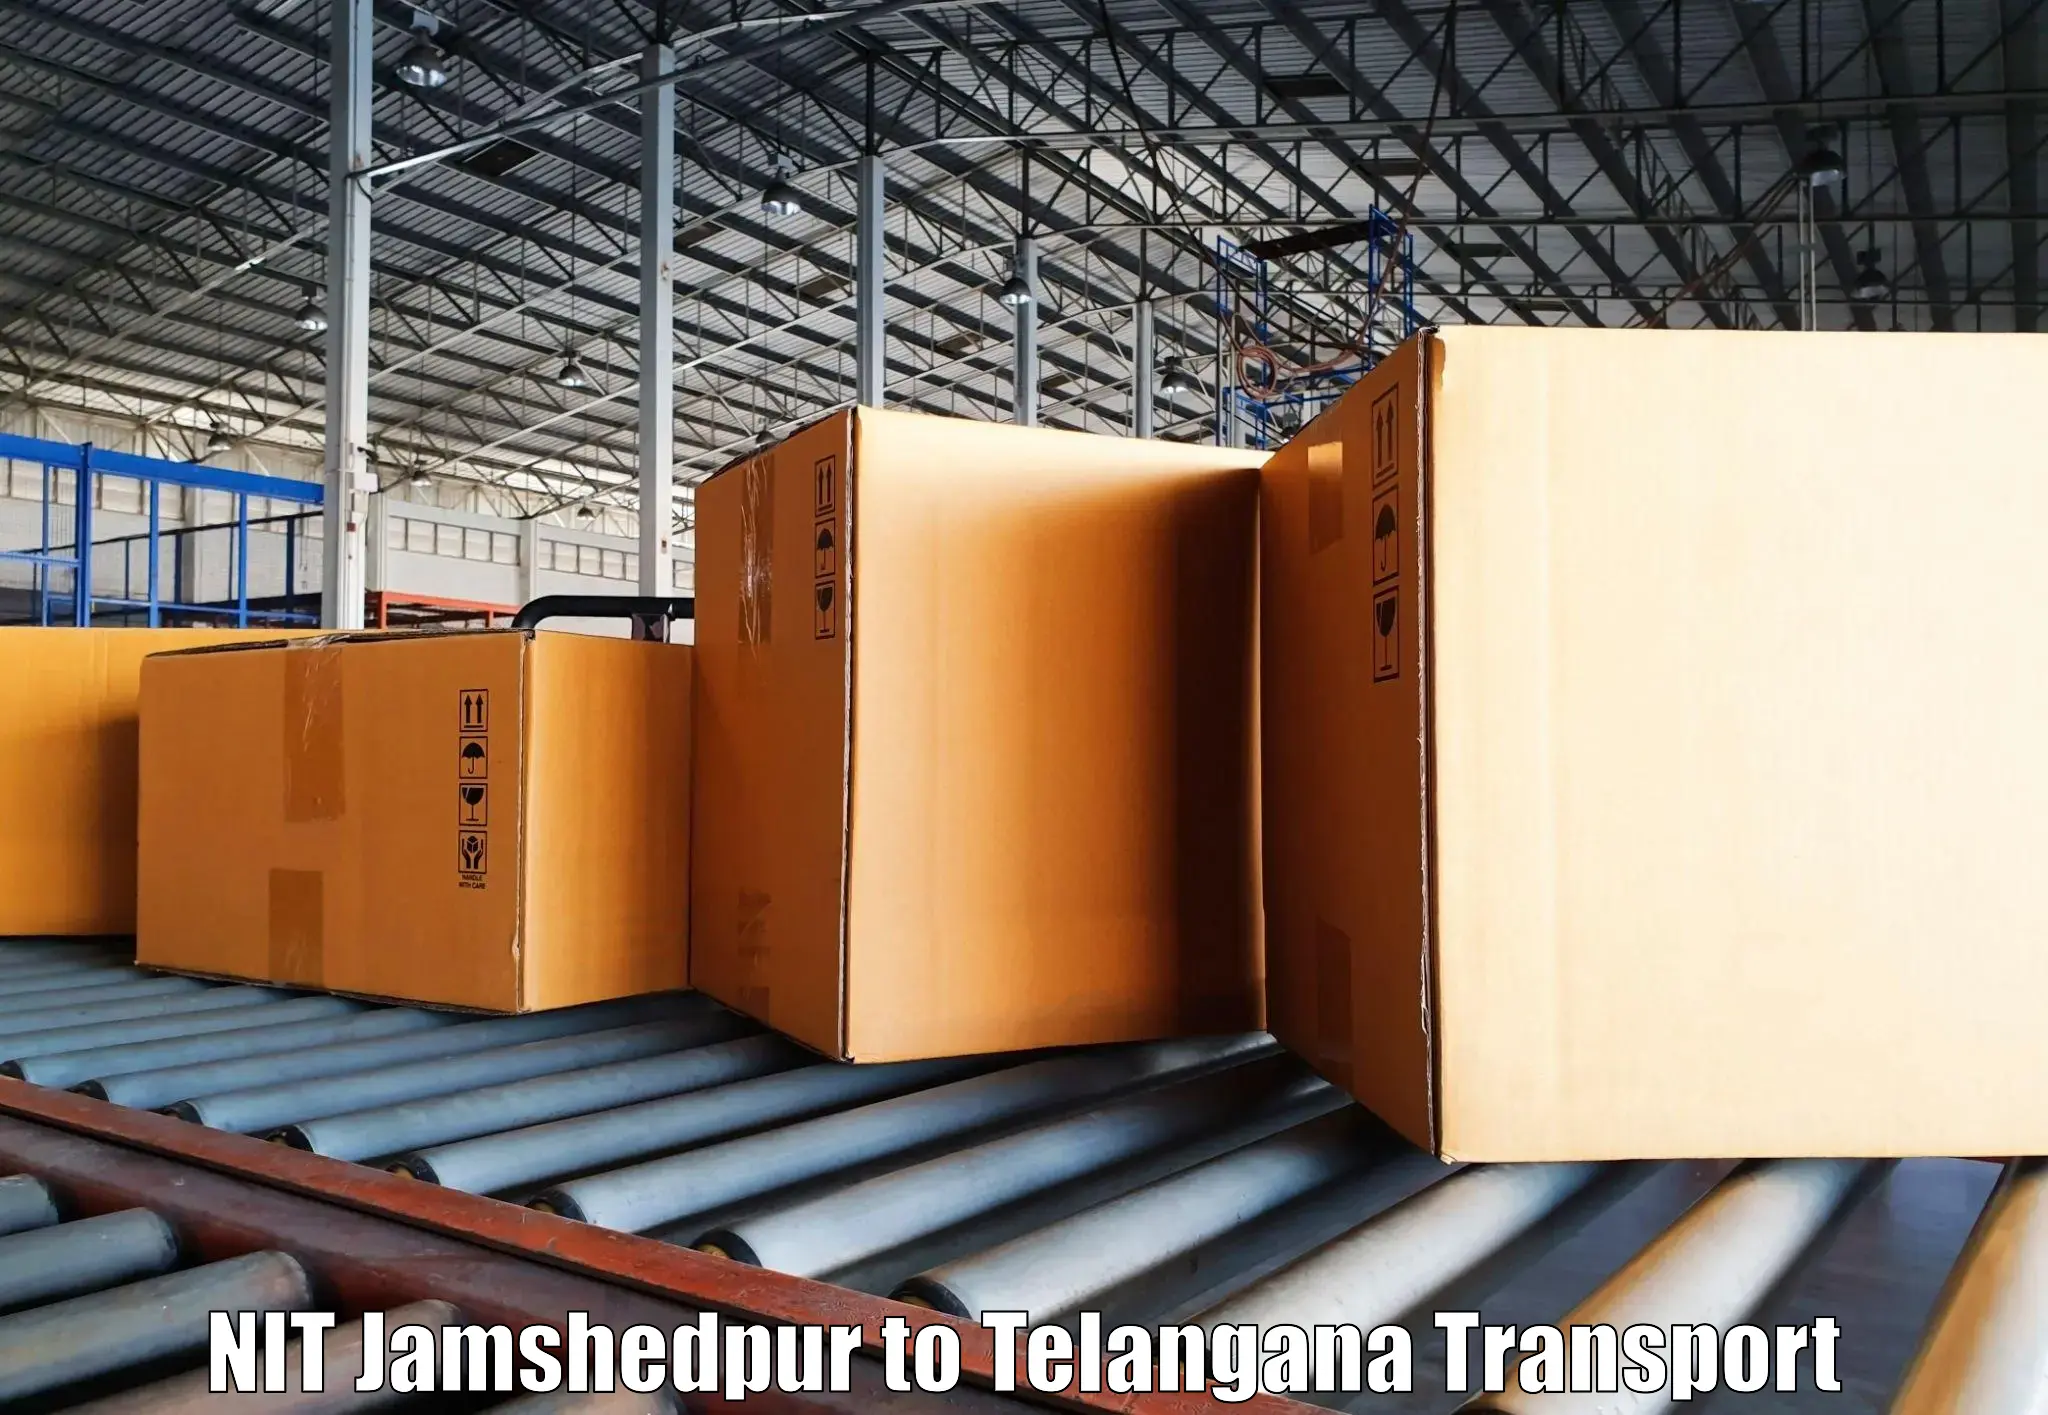 Online transport service NIT Jamshedpur to Mulugu